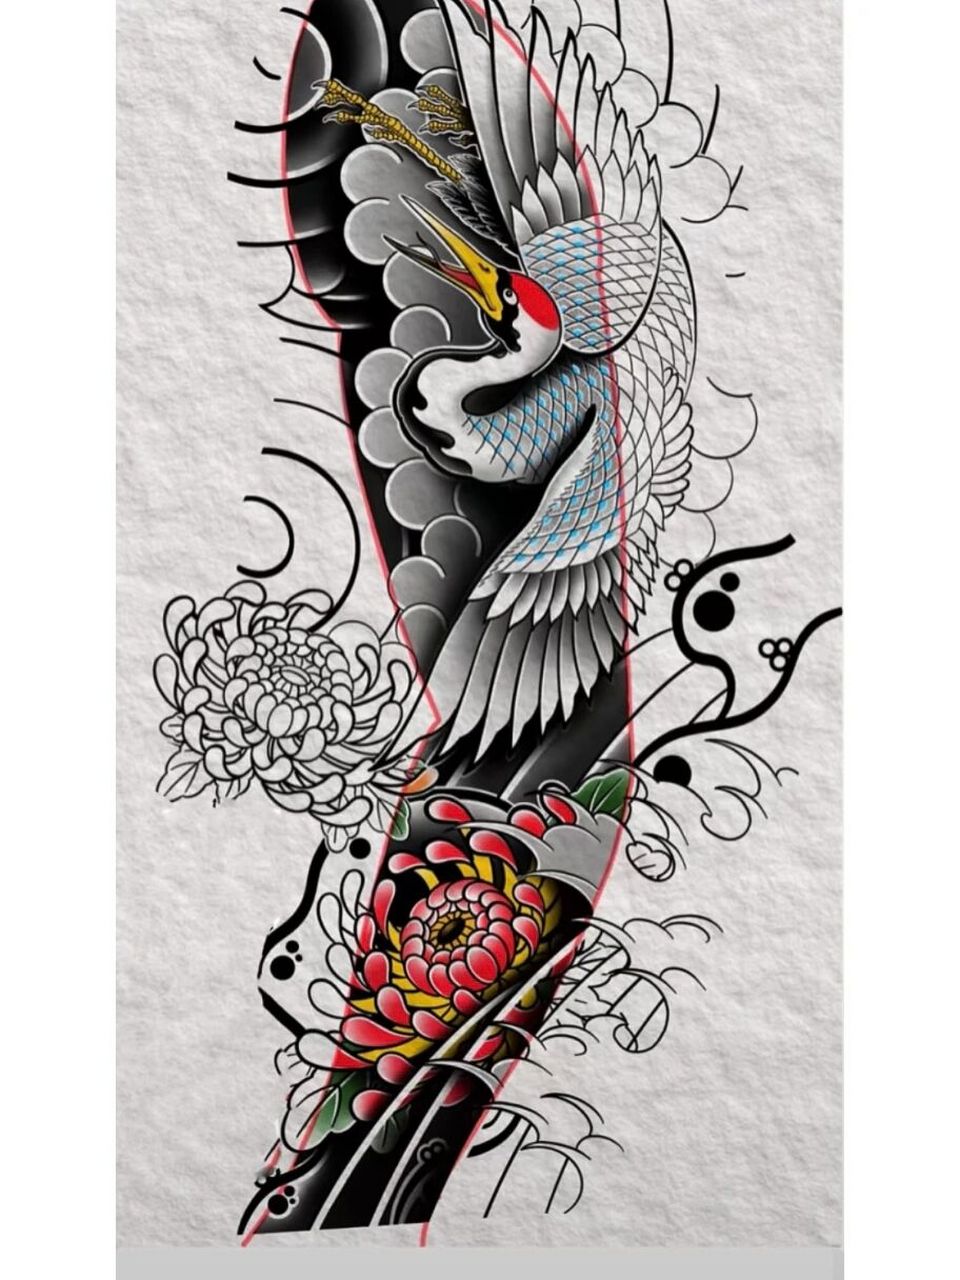 仙鹤纹身花臂手稿图片